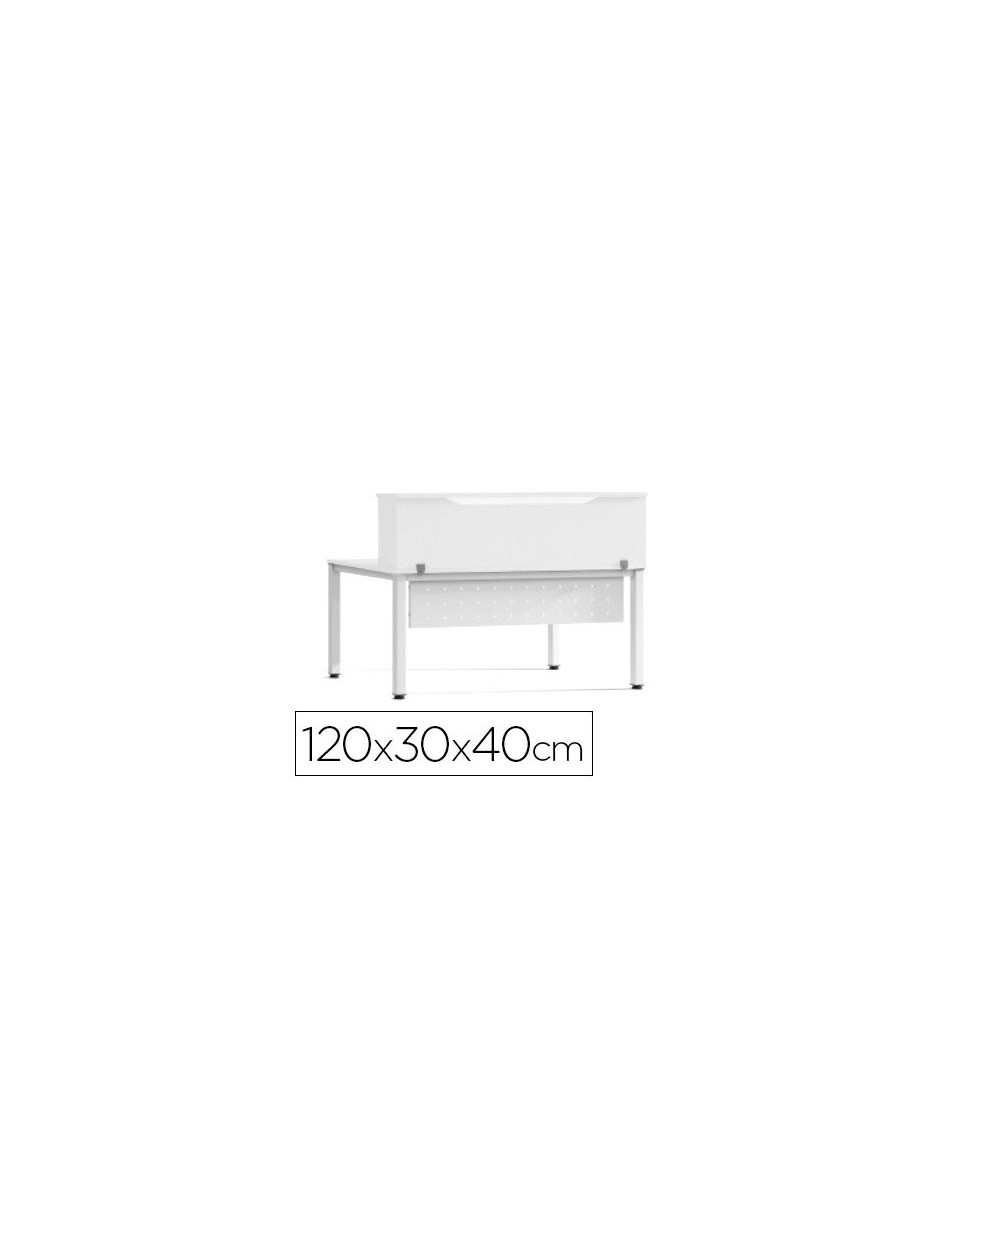 Mostrador de altillo rocada valido para mesas work metal executive 120x30x40 cm acabado aw04 blanco blanco